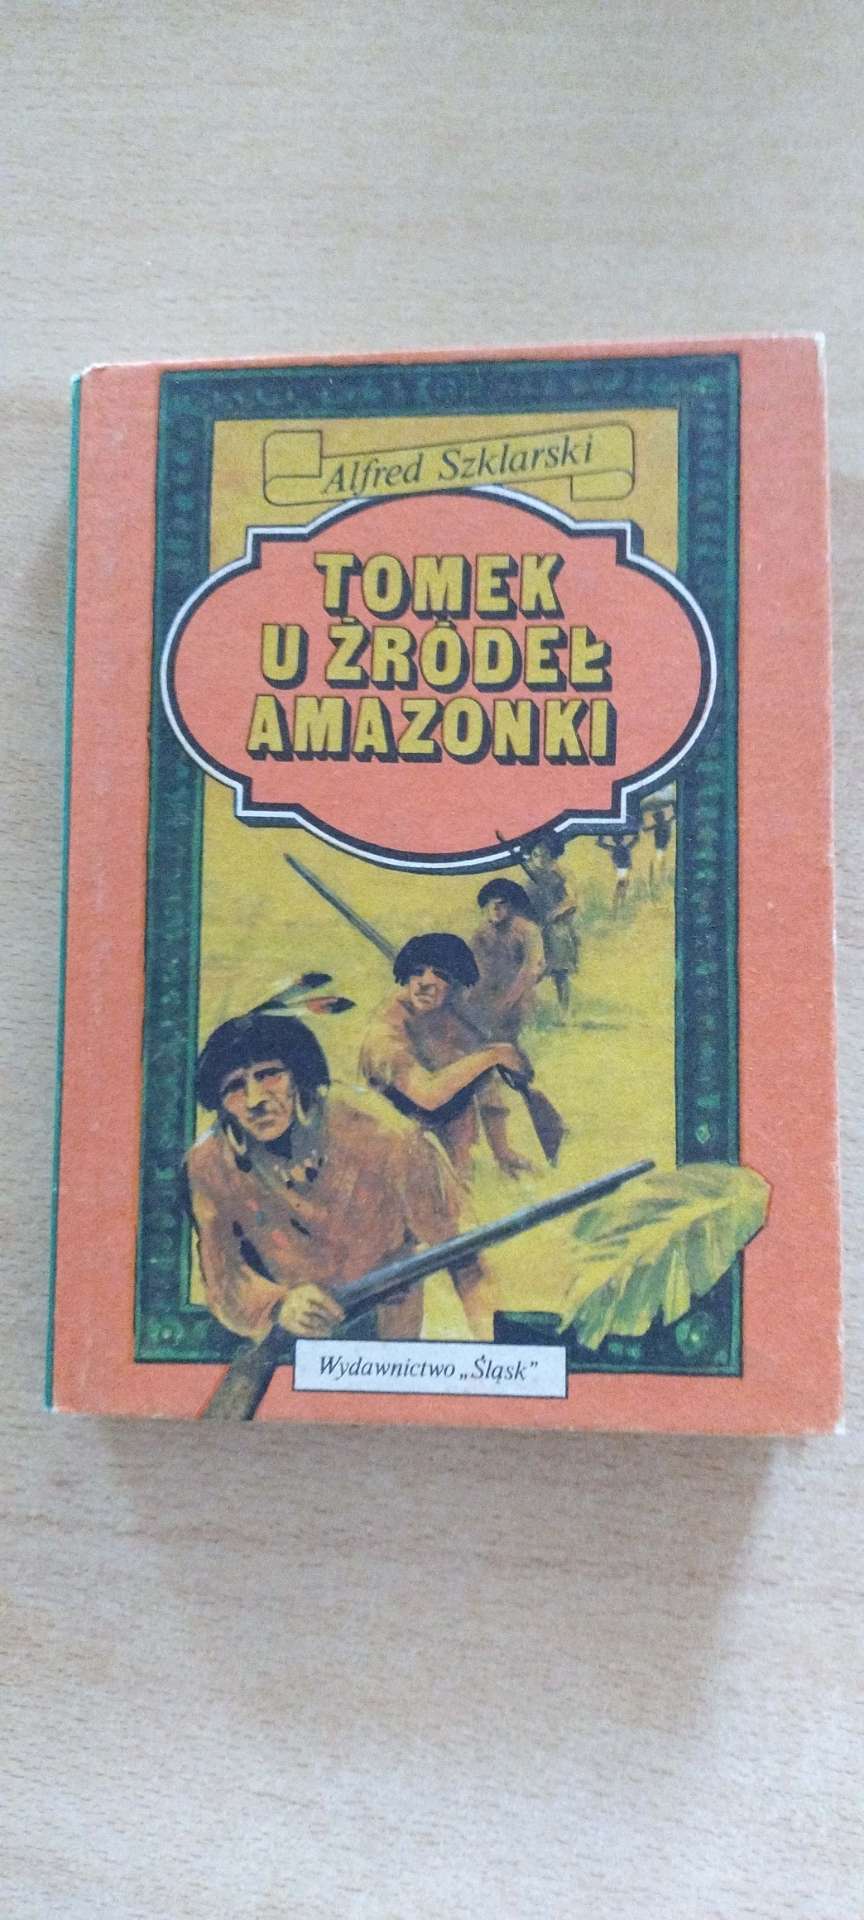 Książka  Tomek u żródeł Amazonki  - Alfred  Szklarski.